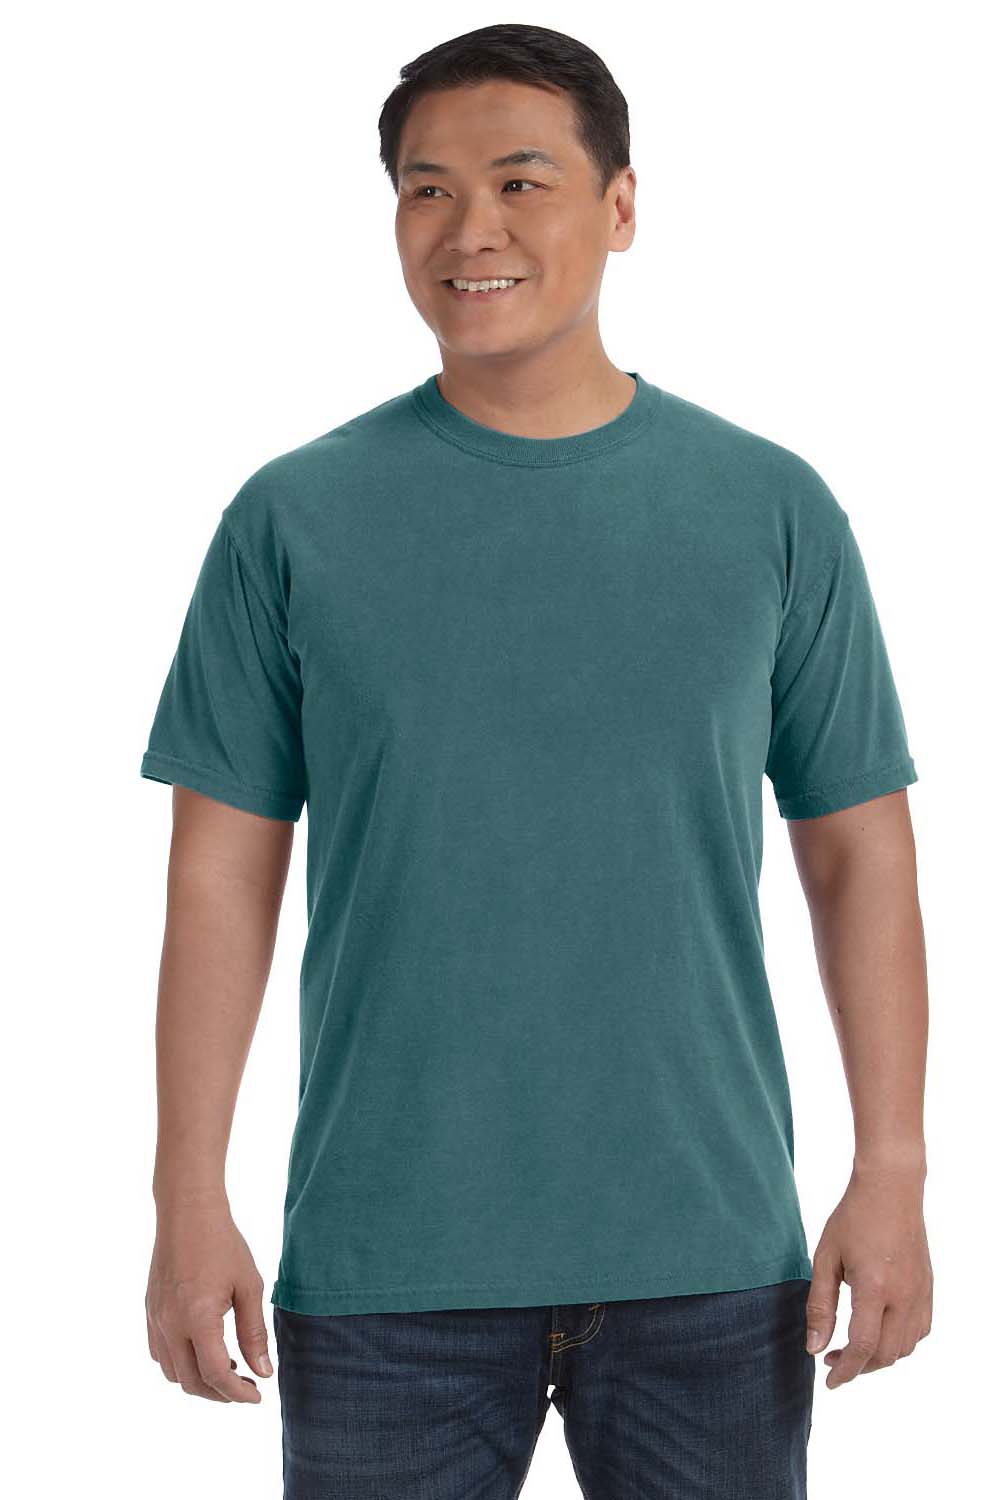 Comfort Colors C1717 Mens Short Sleeve Crewneck T-Shirt Emerald Green Front